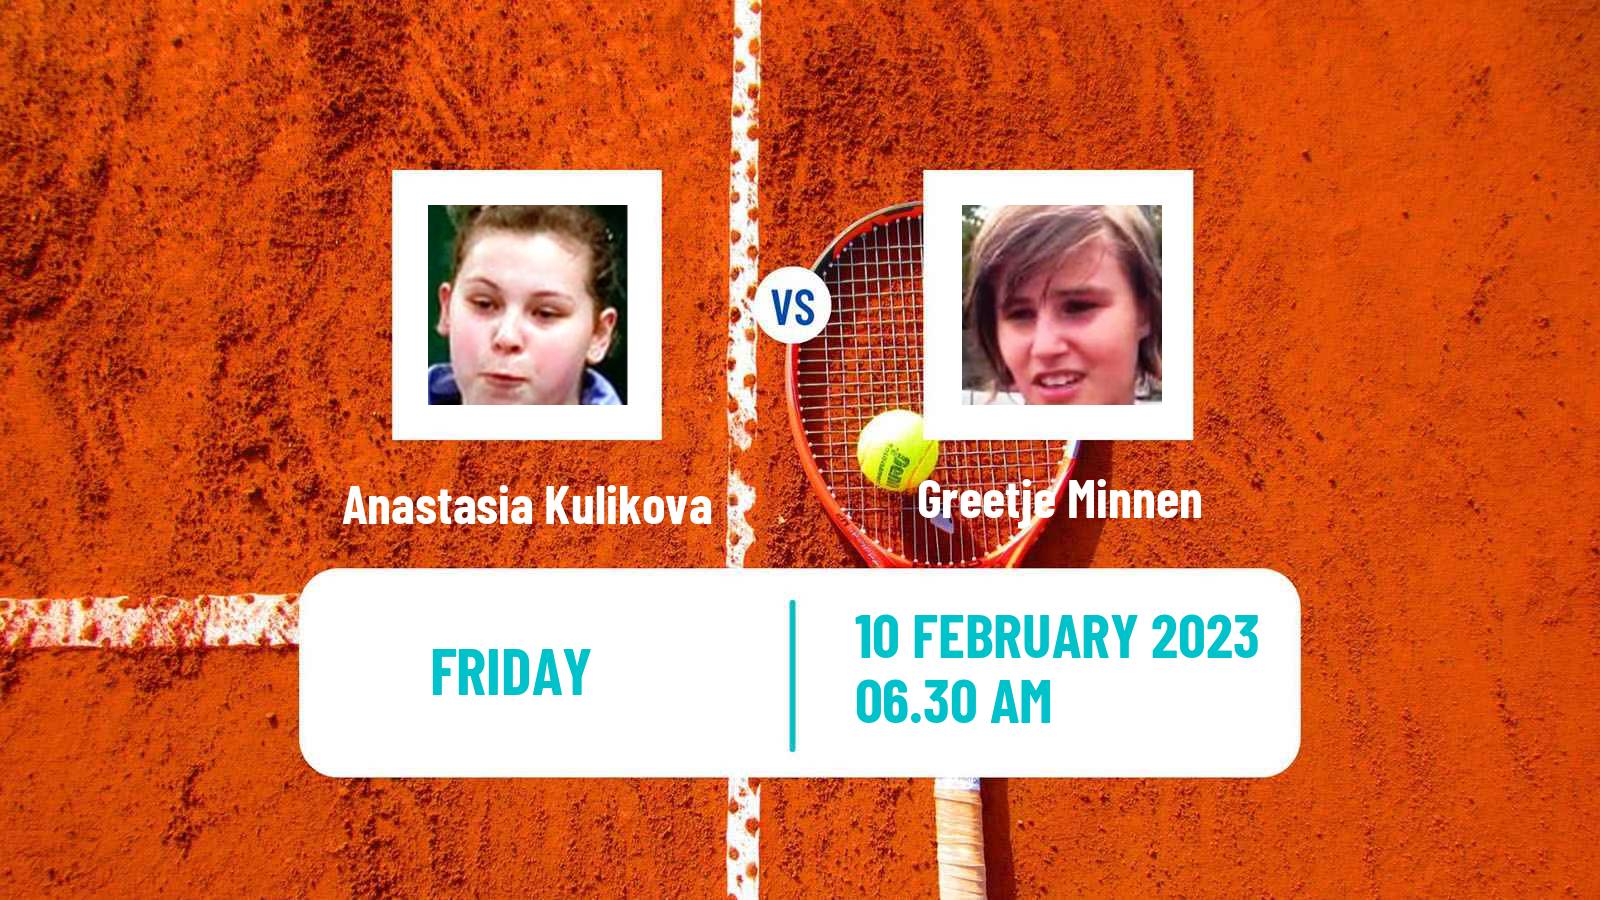 Tennis ITF Tournaments Anastasia Kulikova - Greetje Minnen